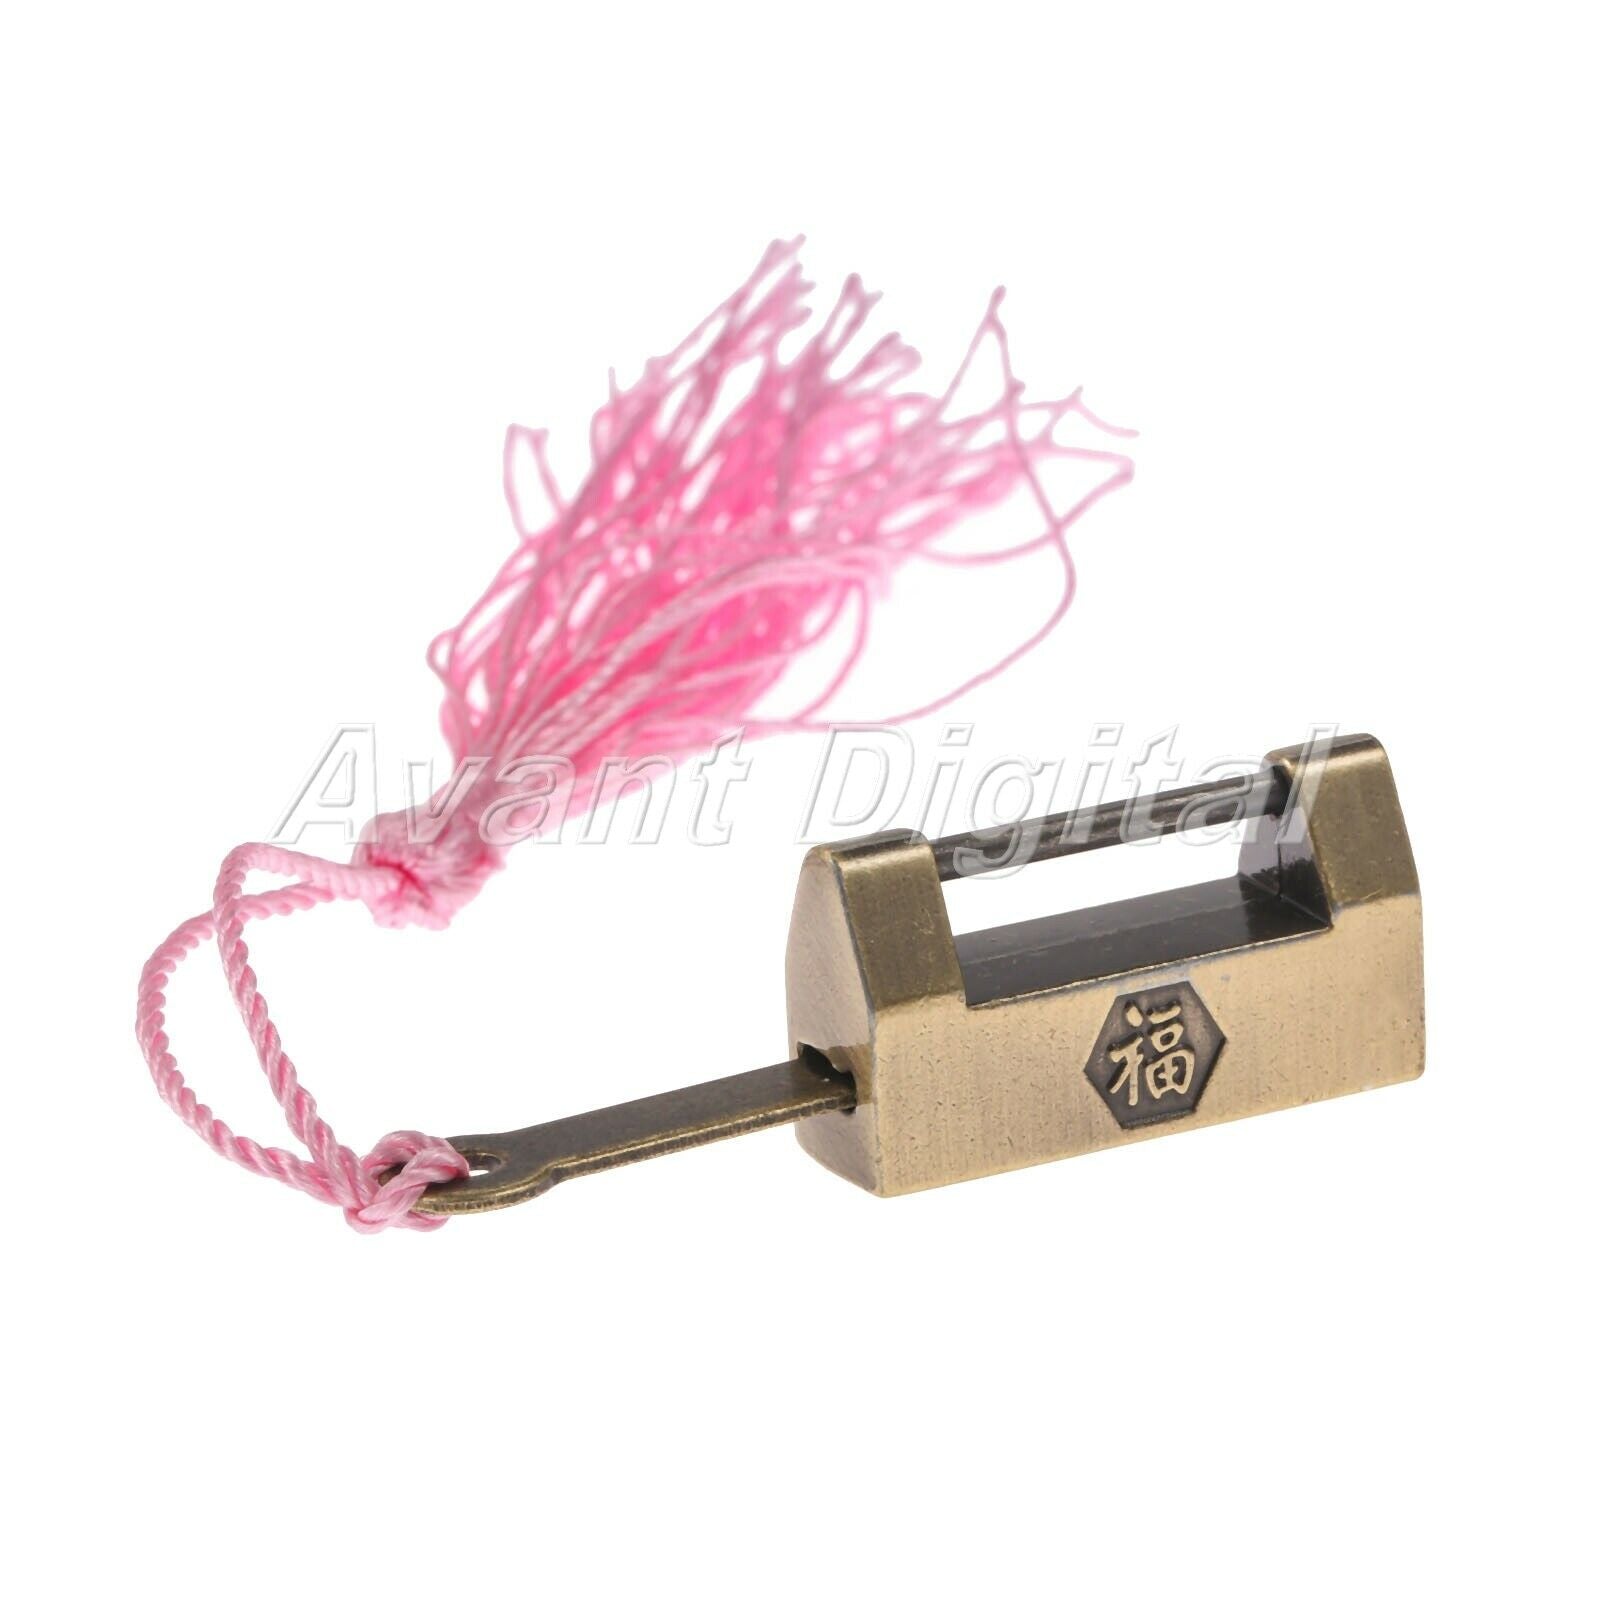 Zinc Alloy Retro Wood Gift Case Jewelry Box Suitcase Lock Padlock Hardware & Key